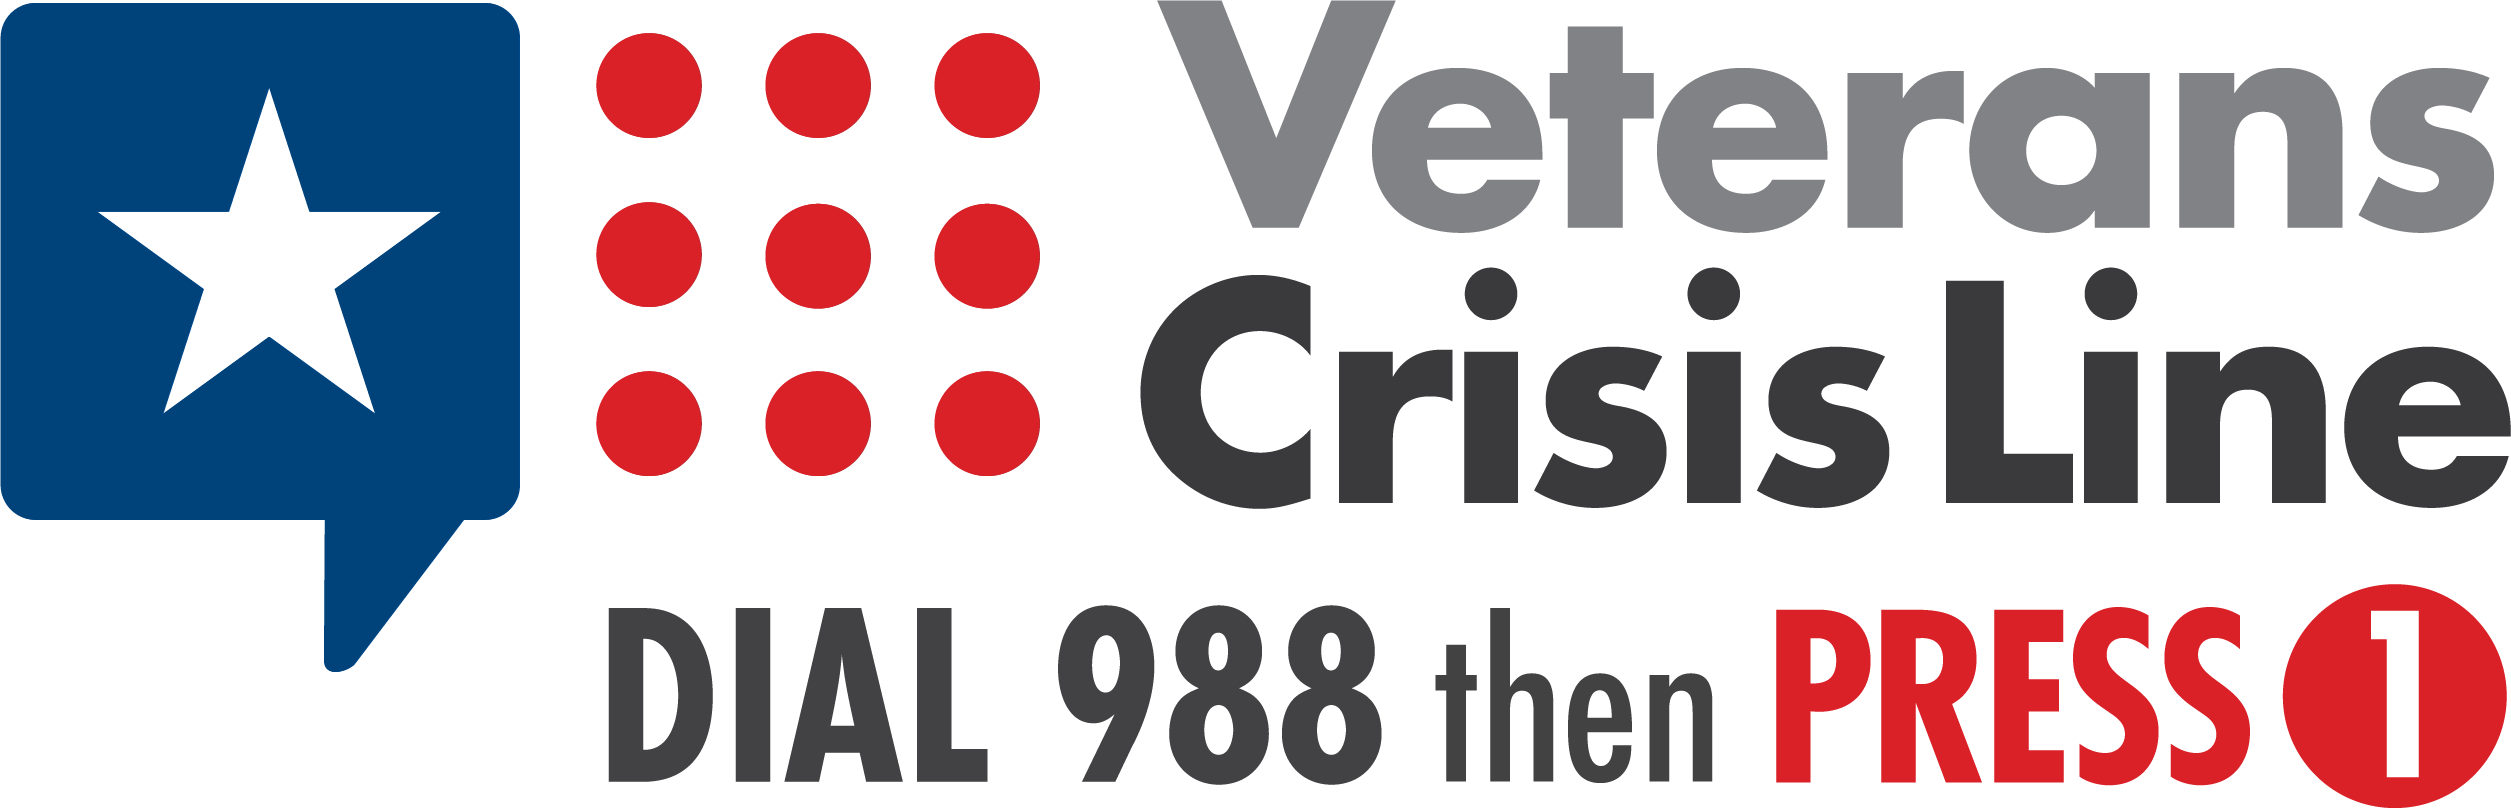 Veterans Crisis Line: dial 988 then press 1